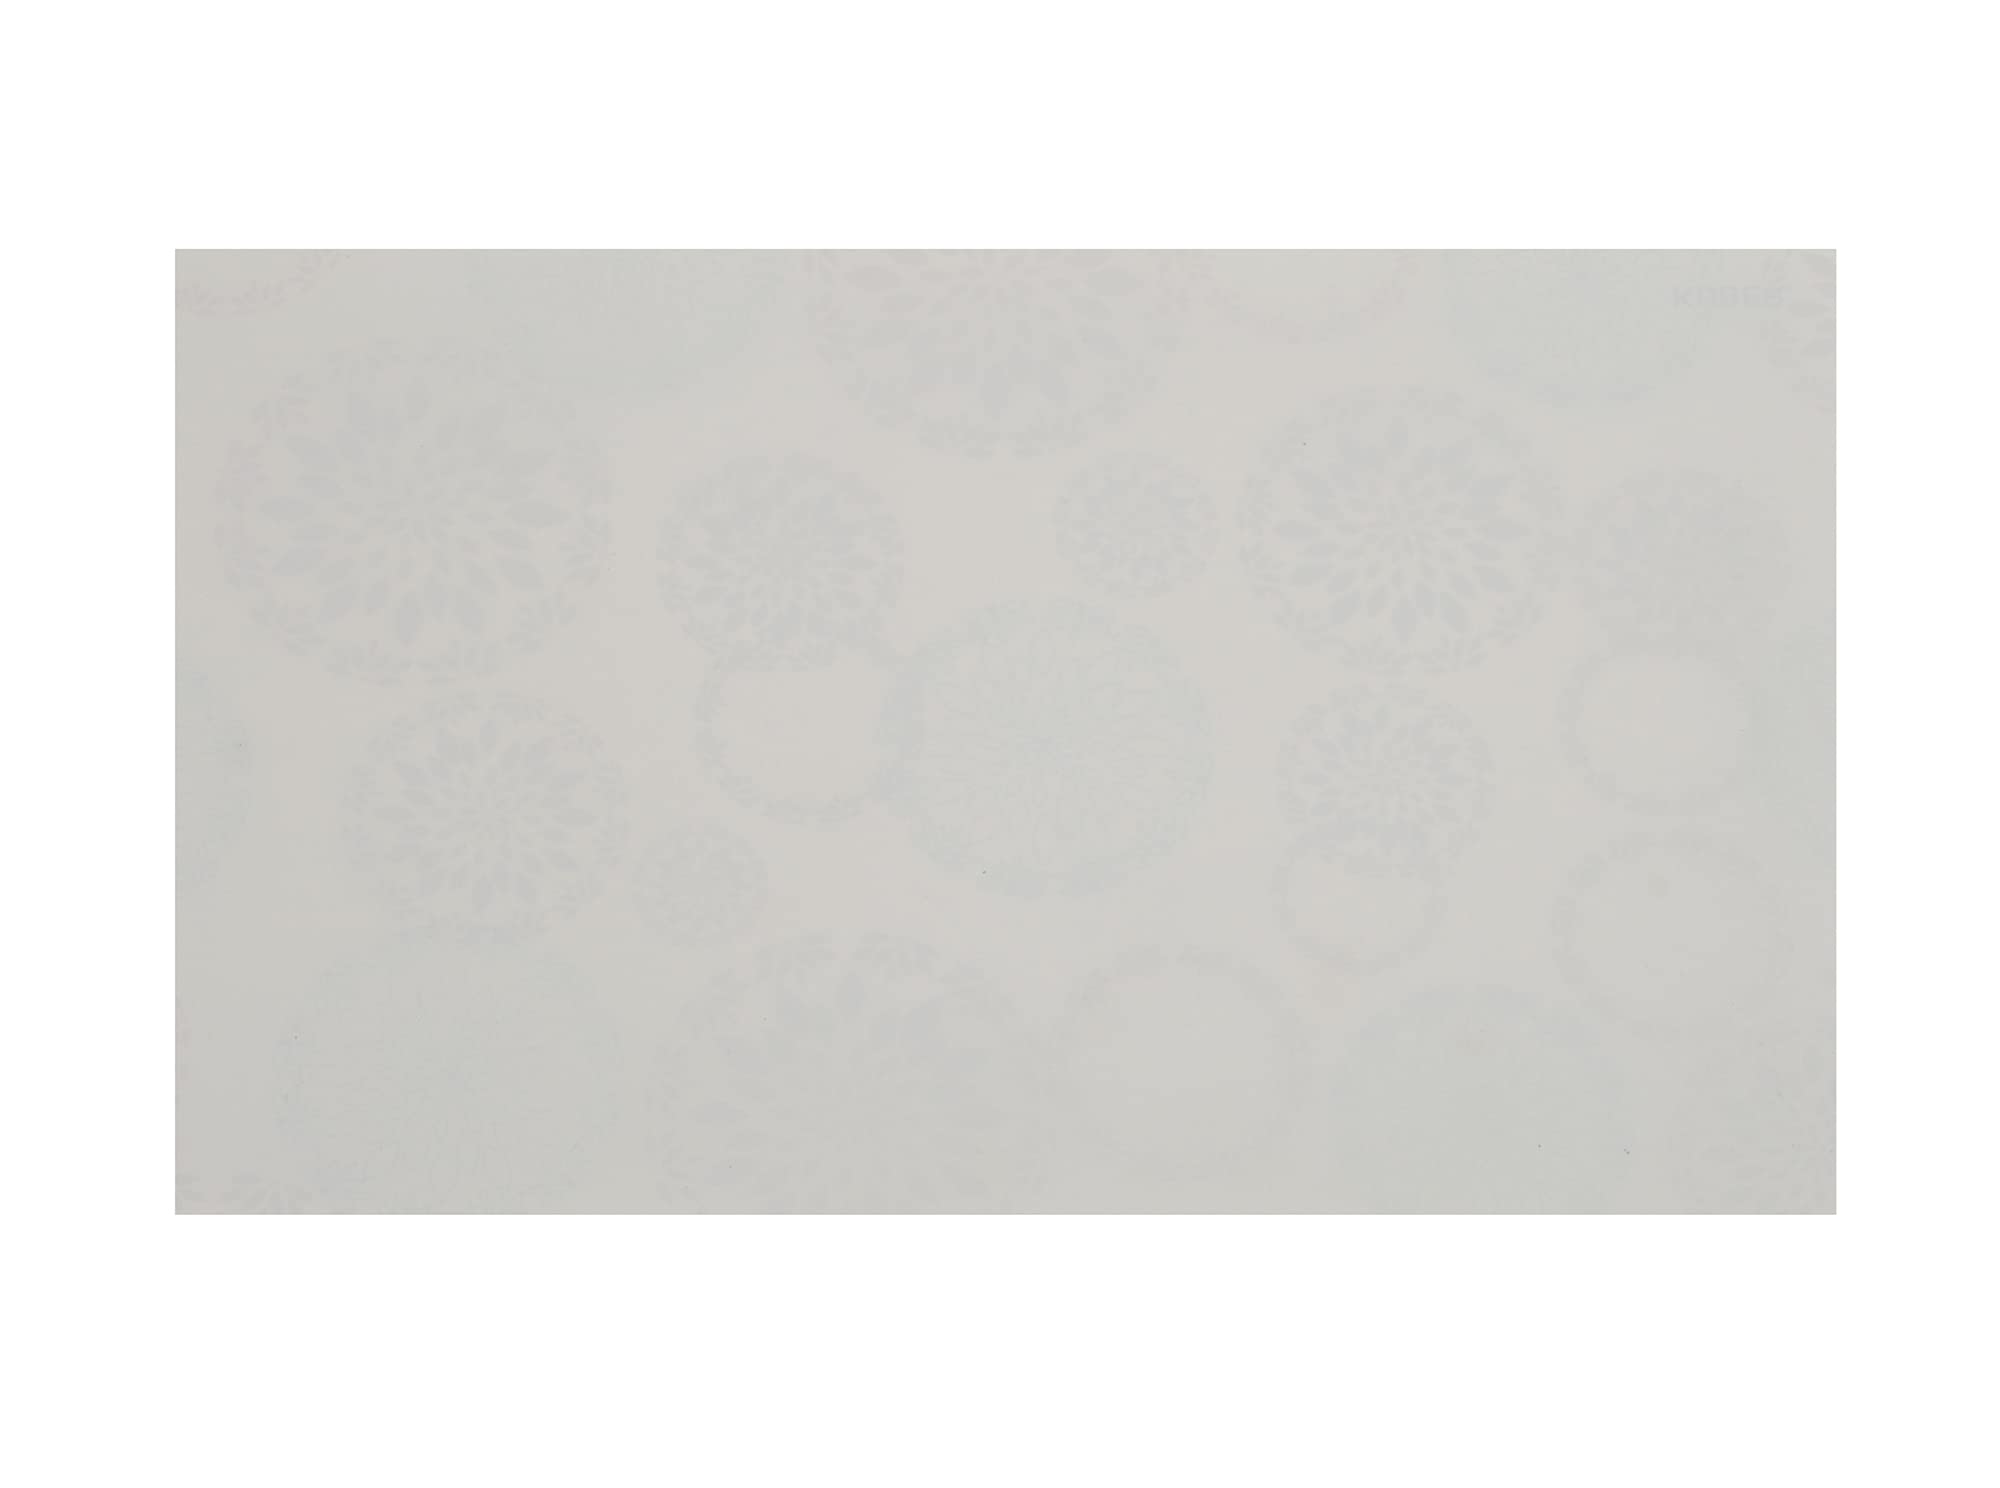 Kuber Industries Reversible Rangoli Print Fridge/Drawer Mats|Water Proof PVC - Polyvinyl Chloride Material|Ranctangular Shape & Non Slip| Size 45 x 30 CM, Pack of 6 (White)